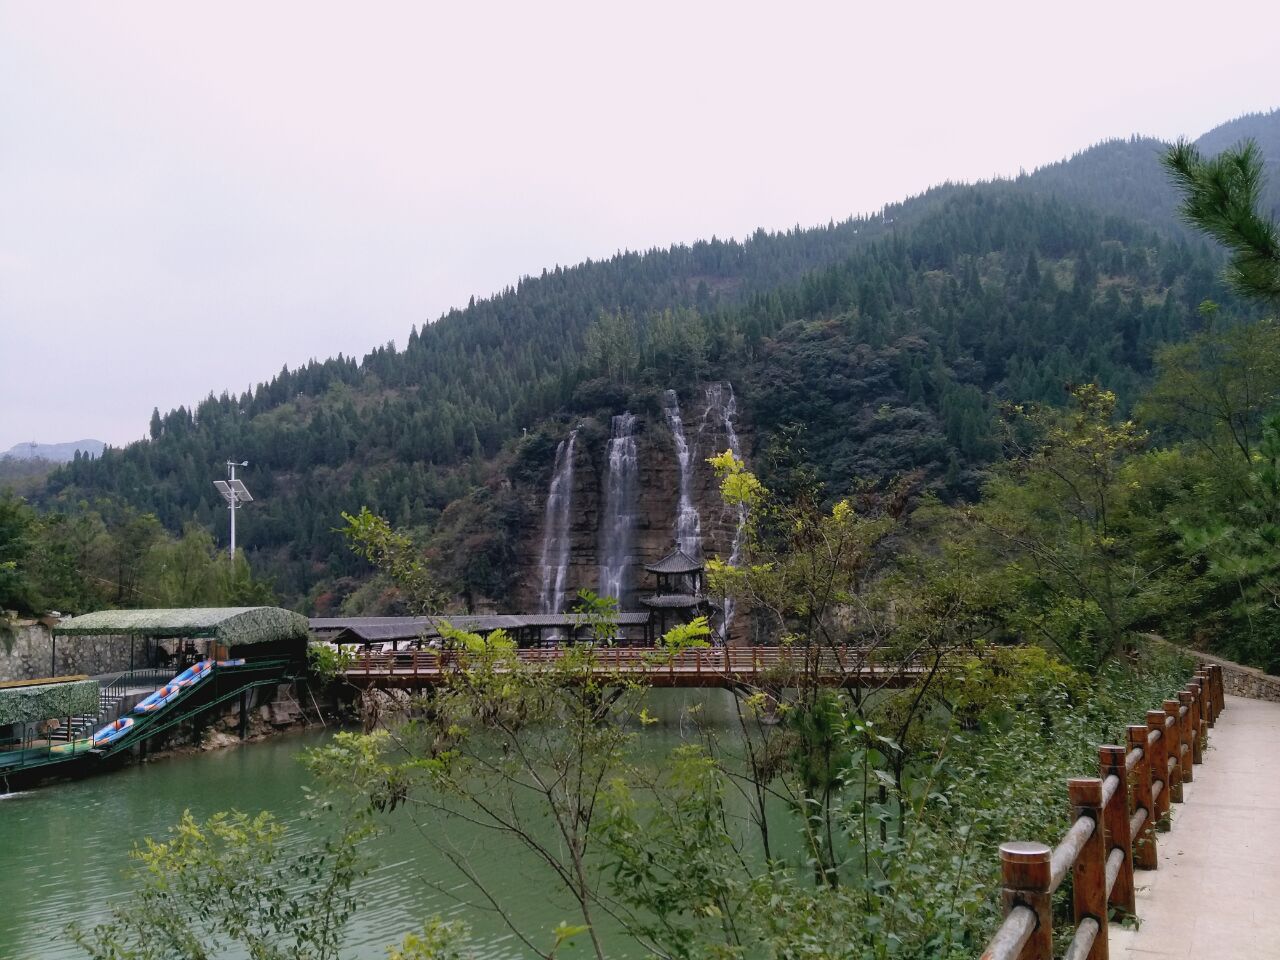 【携程攻略】青州泰和山风景区景点,很愉快的一次旅行